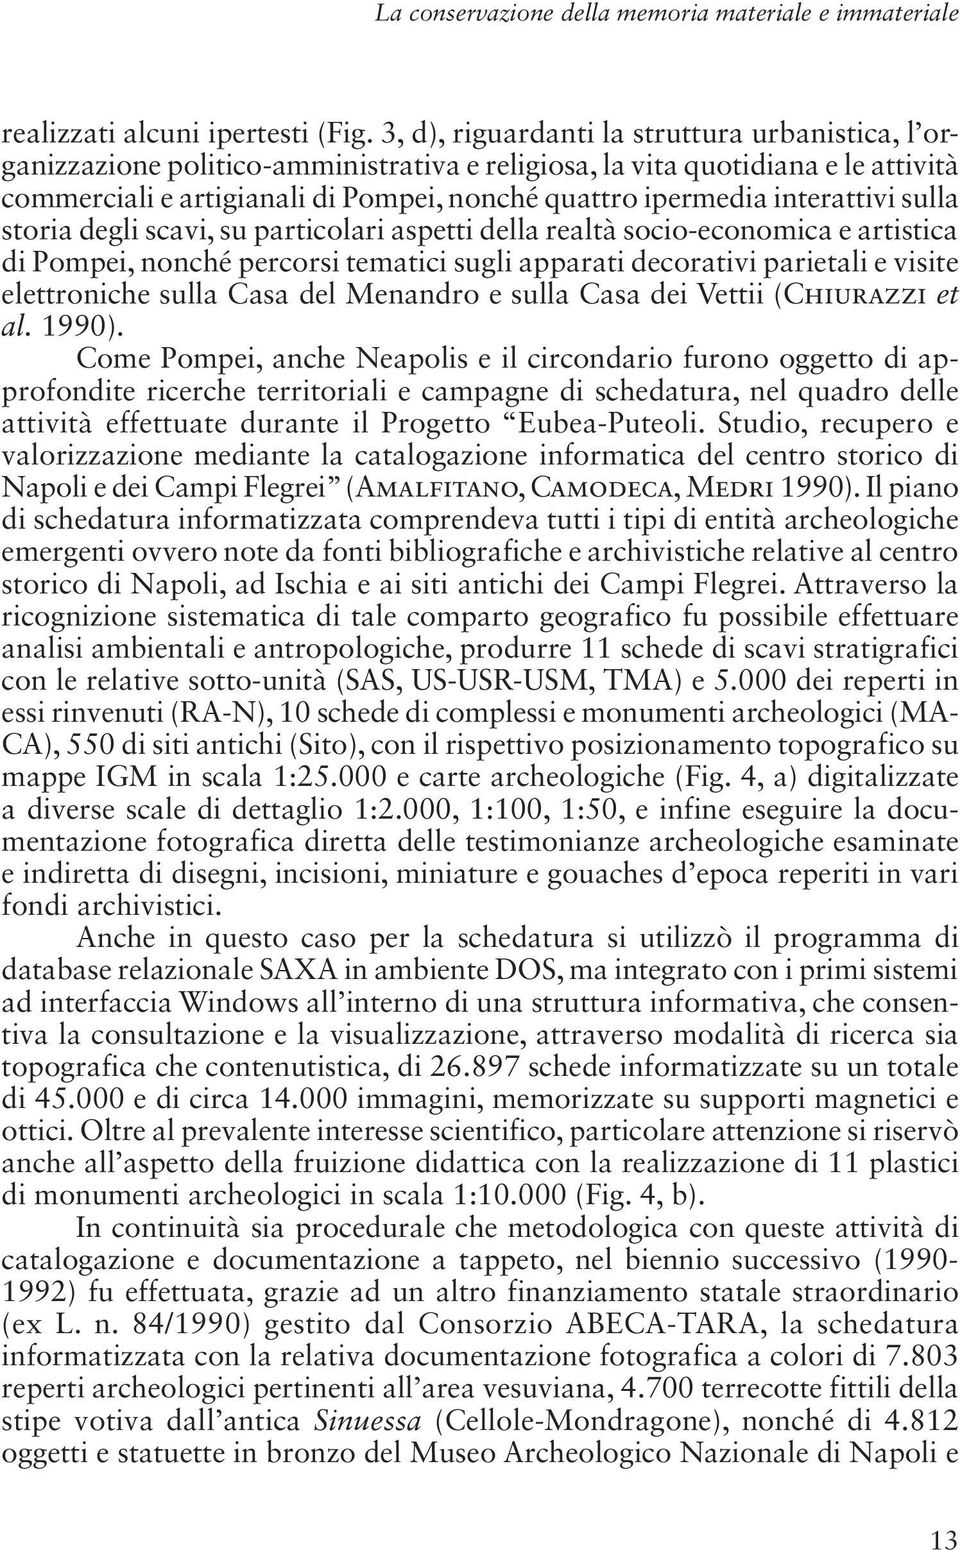 interattivi sulla storia degli scavi, su particolari aspetti della realtà socio-economica e artistica di Pompei, nonché percorsi tematici sugli apparati decorativi parietali e visite elettroniche